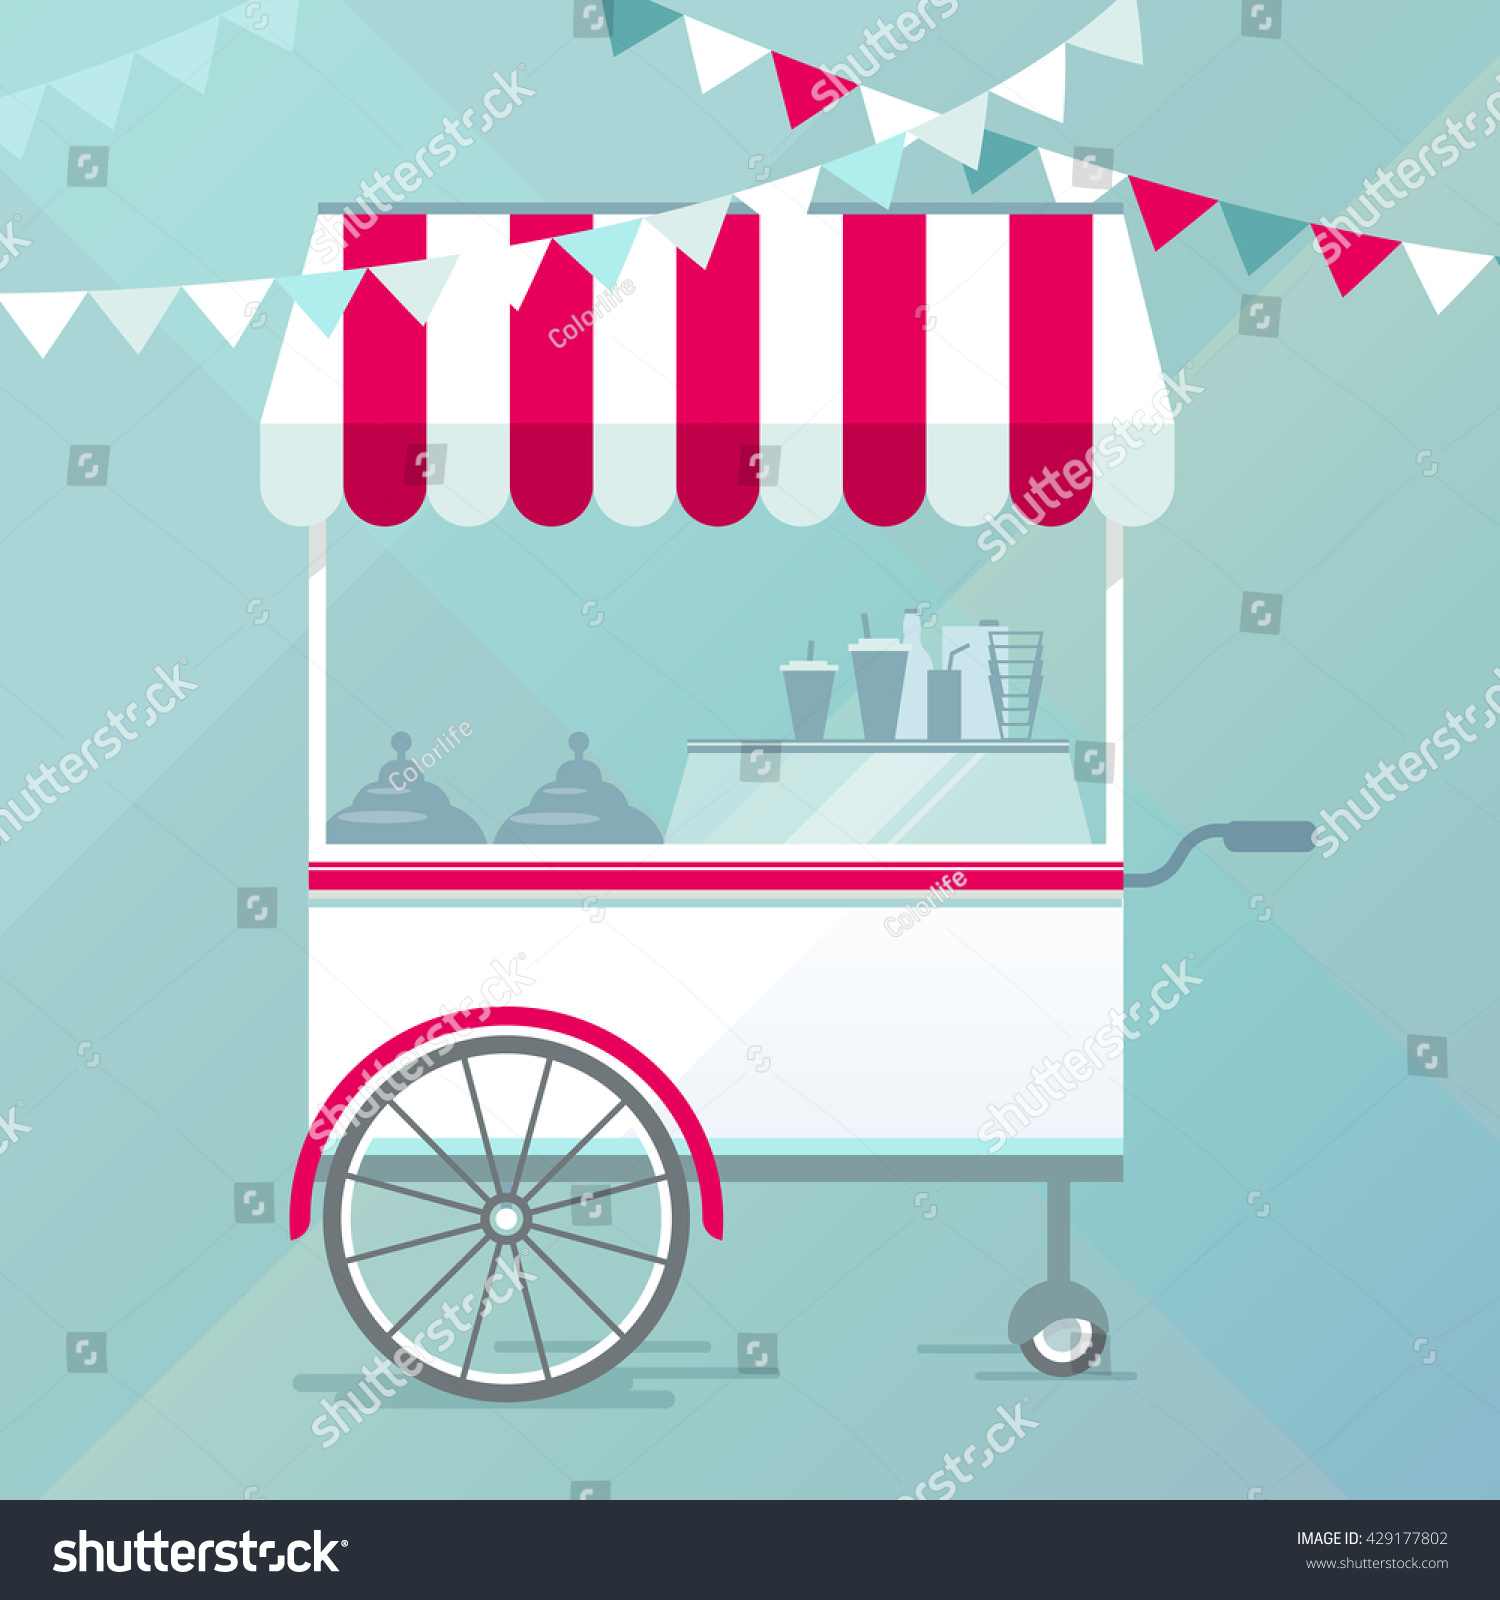 SVG of Street food cart, bike cafe concept vector illustration, flat design style svg